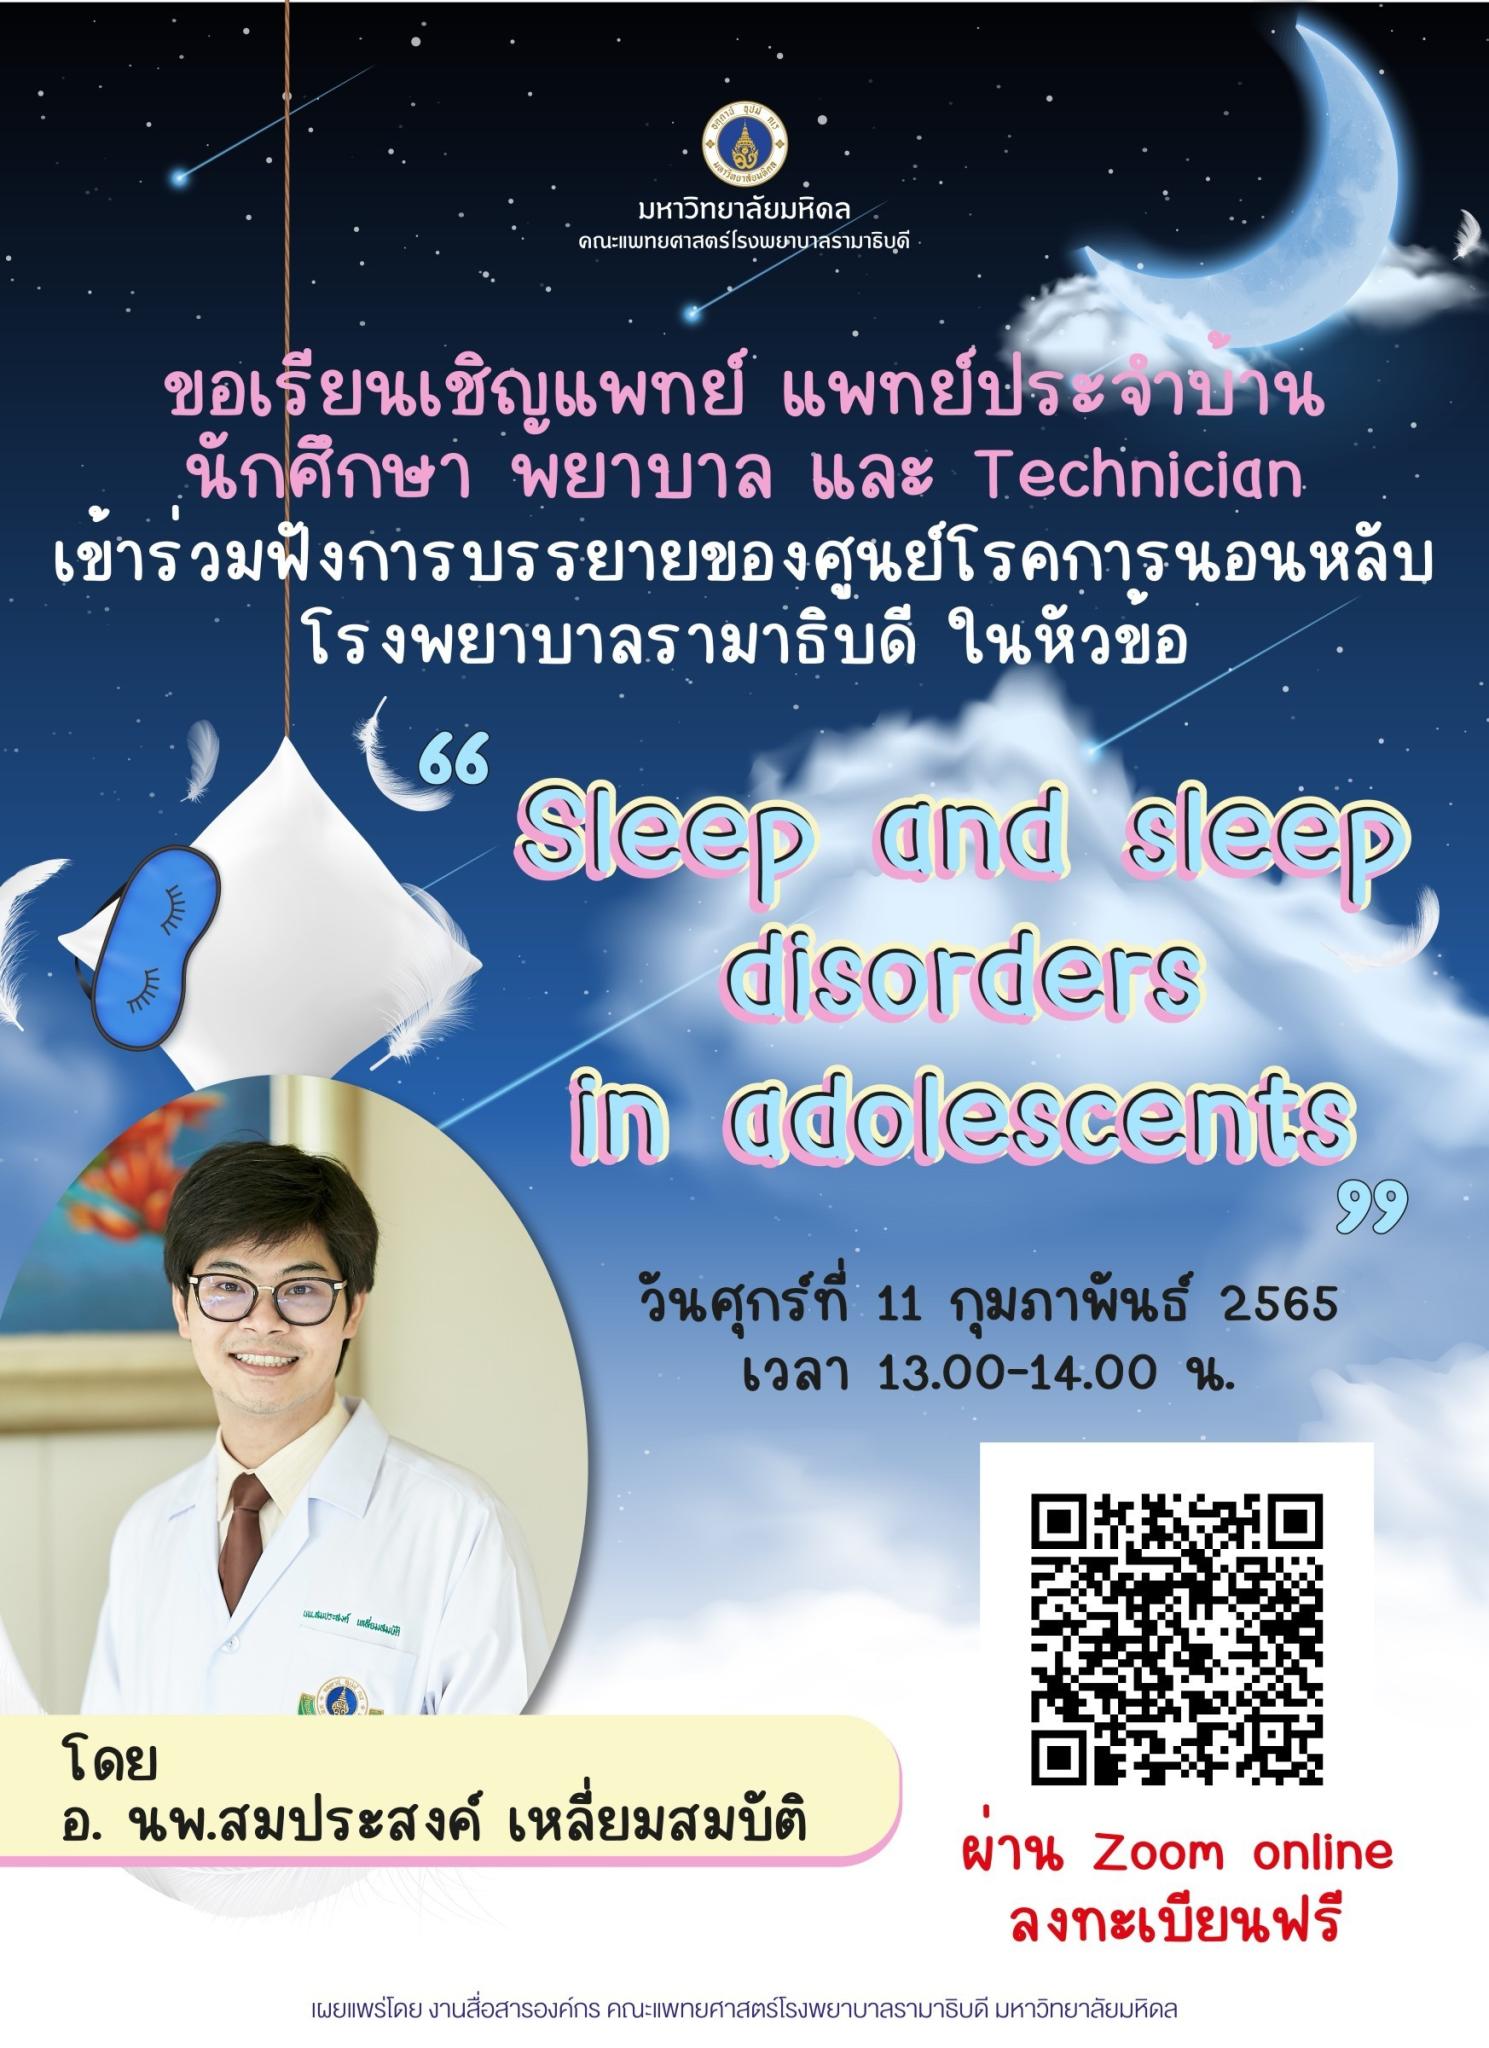 Sleep and sleep disorders in adolescents